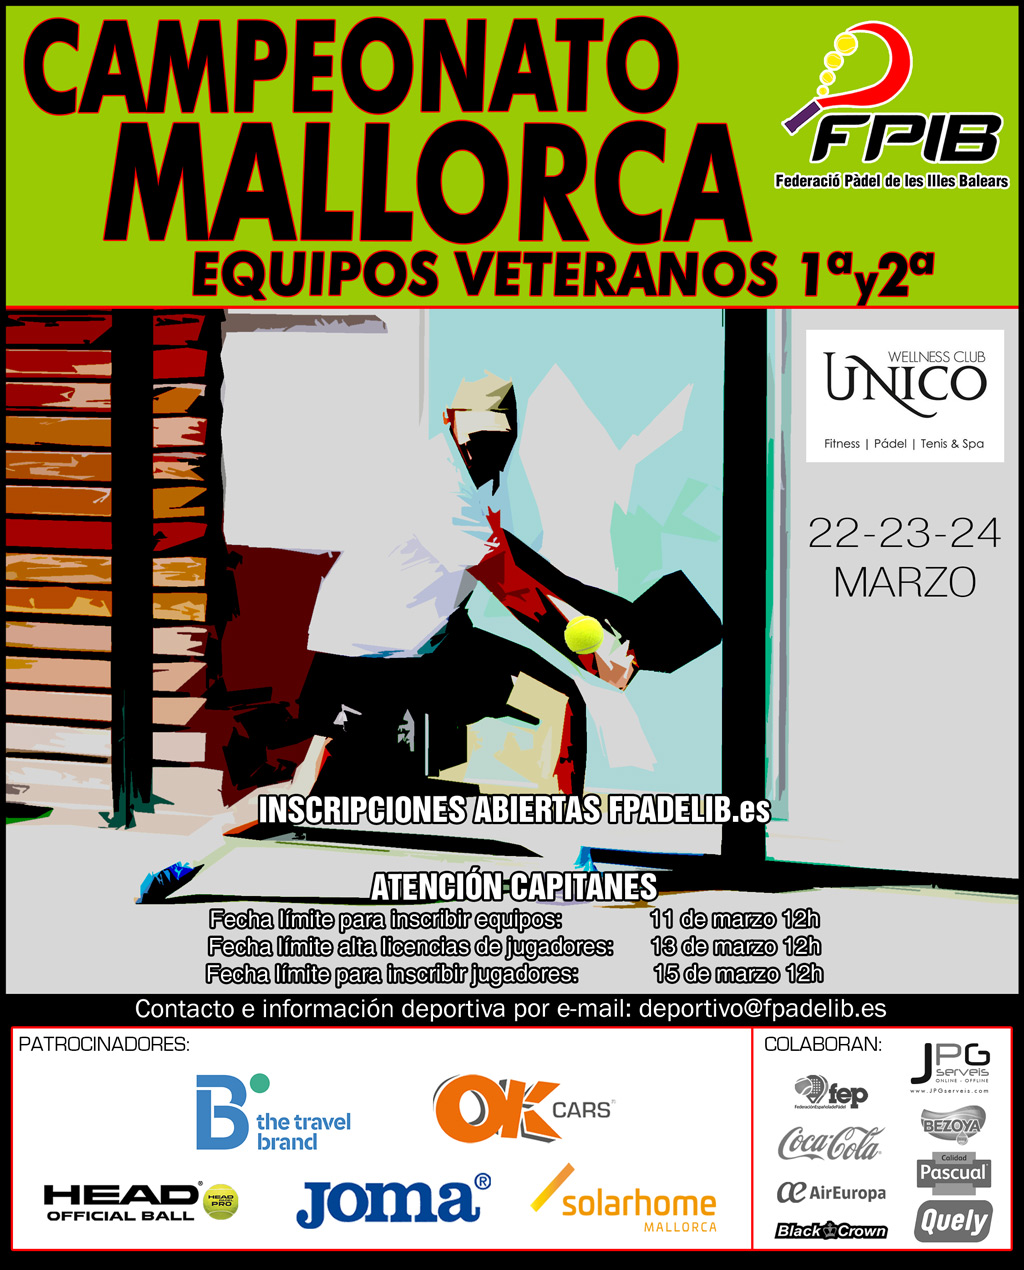 2019 Camp Mallorca Equipos Veteranos1y2